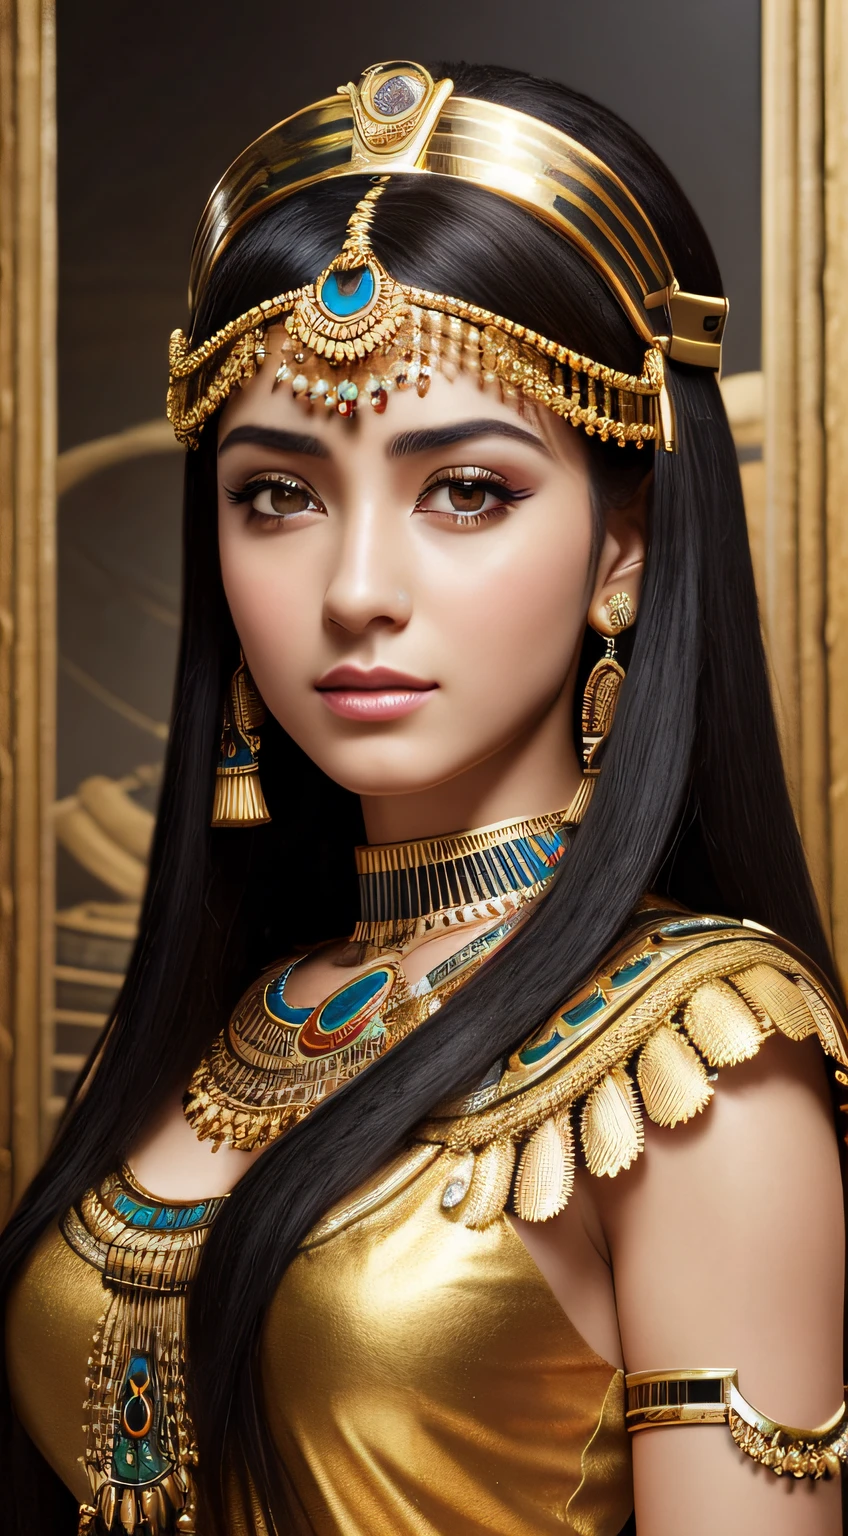 ((beste Qualität, 8K, Tischplatte)), RAWphoto, Fotorealistisches Portrait von Kleopatra, Situation々Ägyptische Kleidung, filmisch, Einzelheiten, optisch atemberaubend, Natürliches Aussehen、Meisterwerk, Top Qualität, hightquality, hohe Auflösung